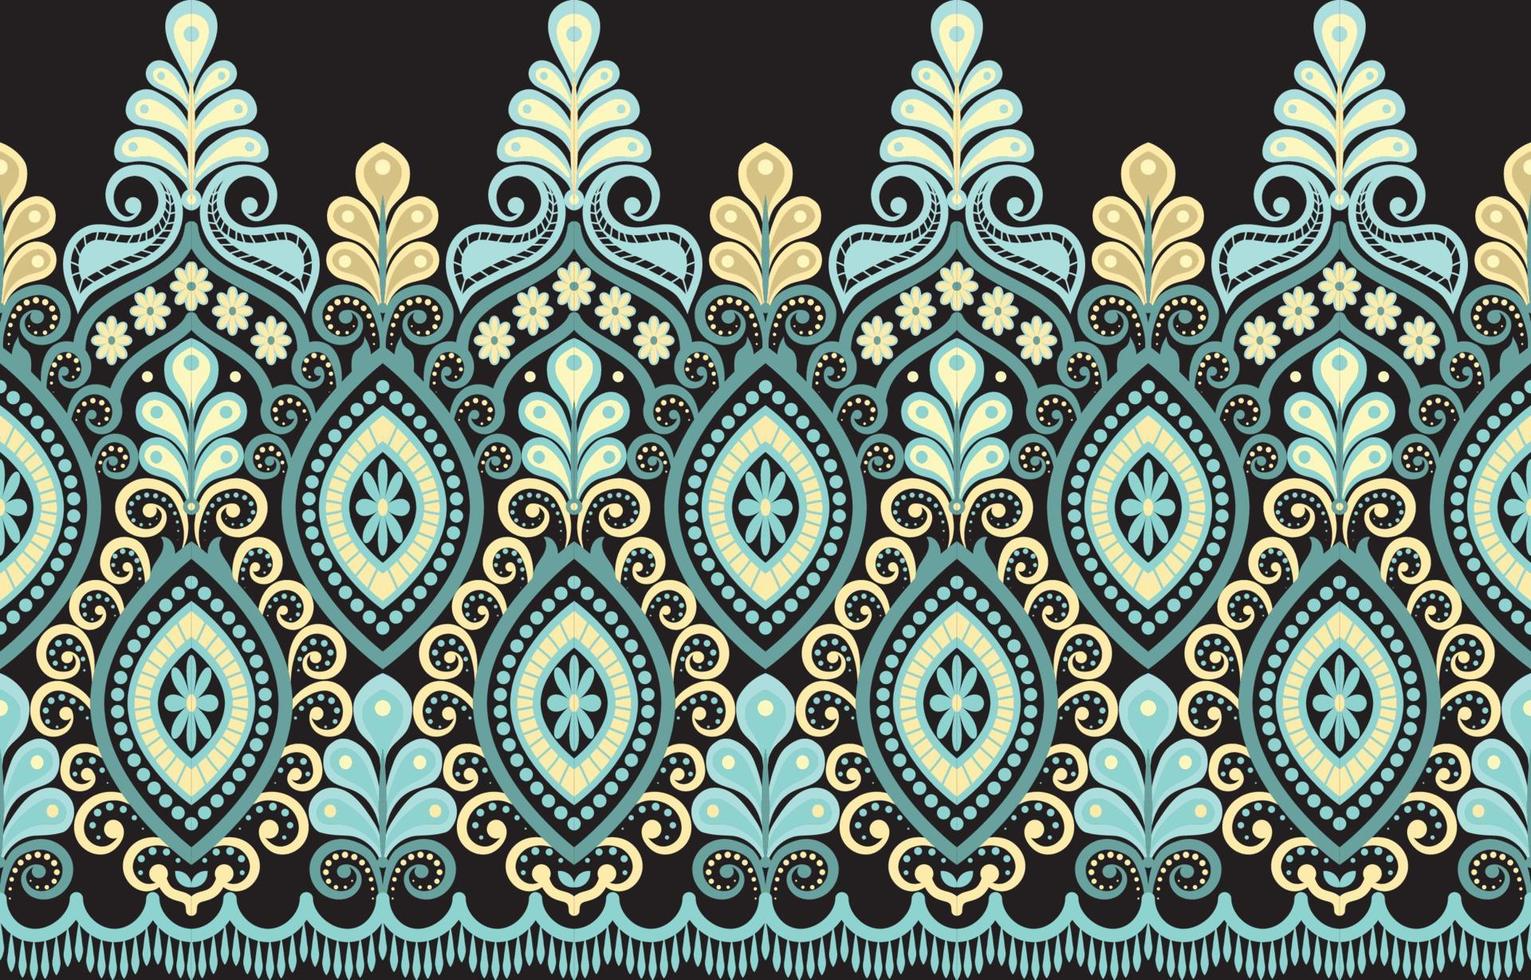 diseño tradicional geométrico étnico oriental para fondo, alfombra, papel pintado, ropa, envoltura, batik, tela, estilo de bordado de ilustración vectorial. vector